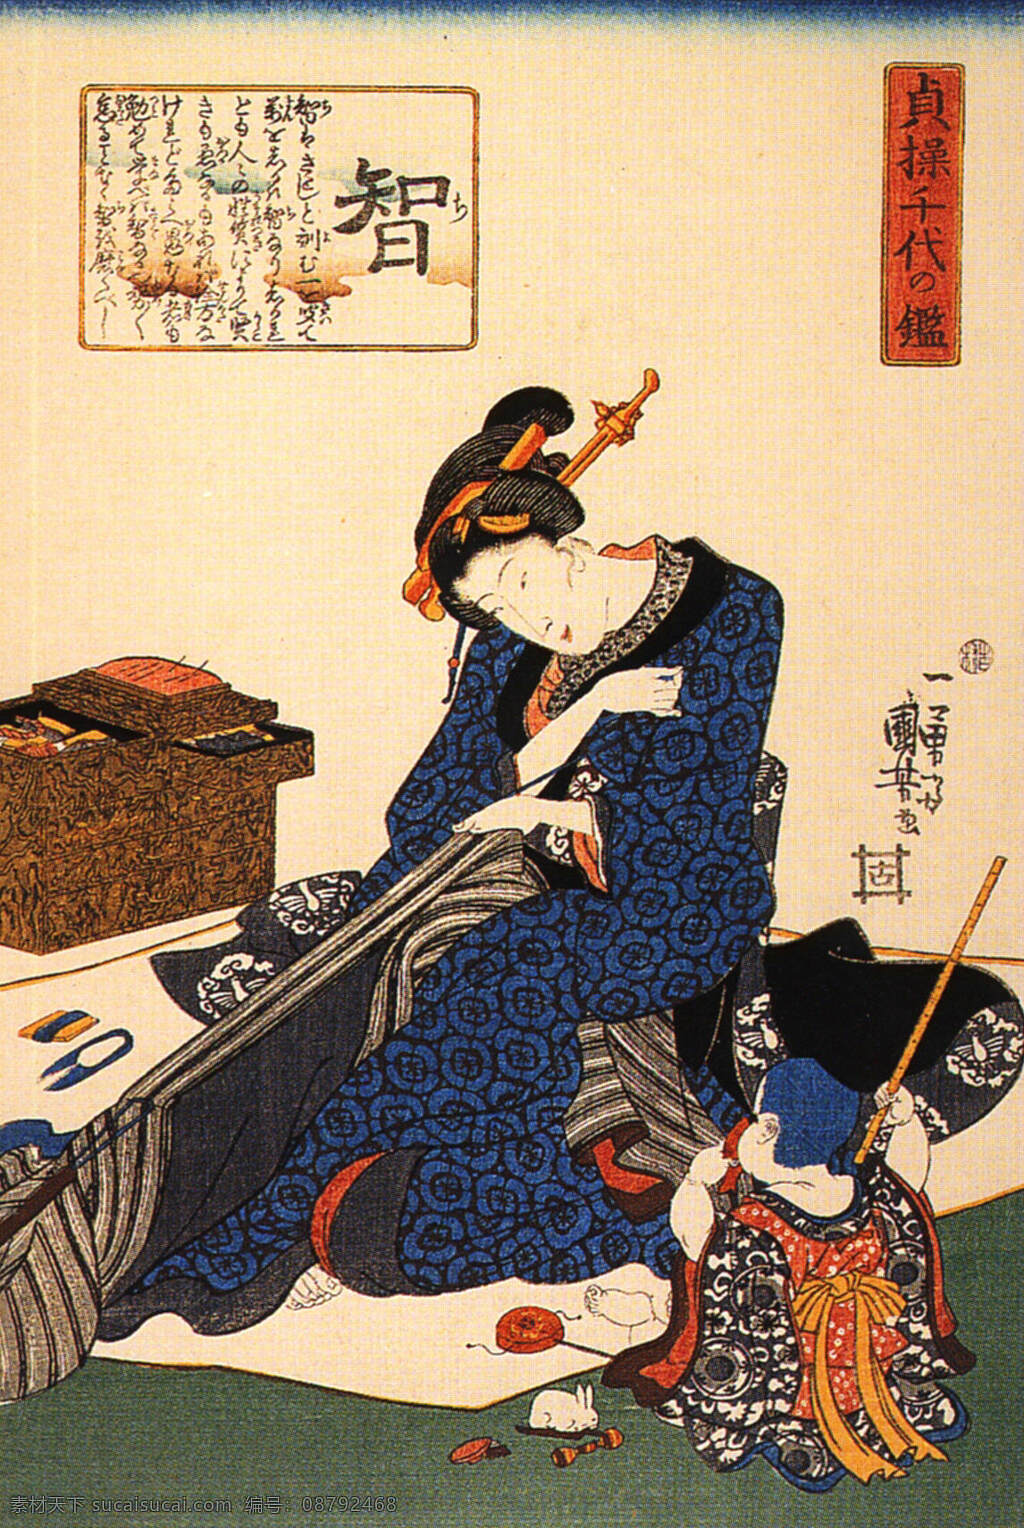 日本 日式 浮世绘 装饰画 壁画 手绘 日本浮世绘 文化艺术 绘画书法